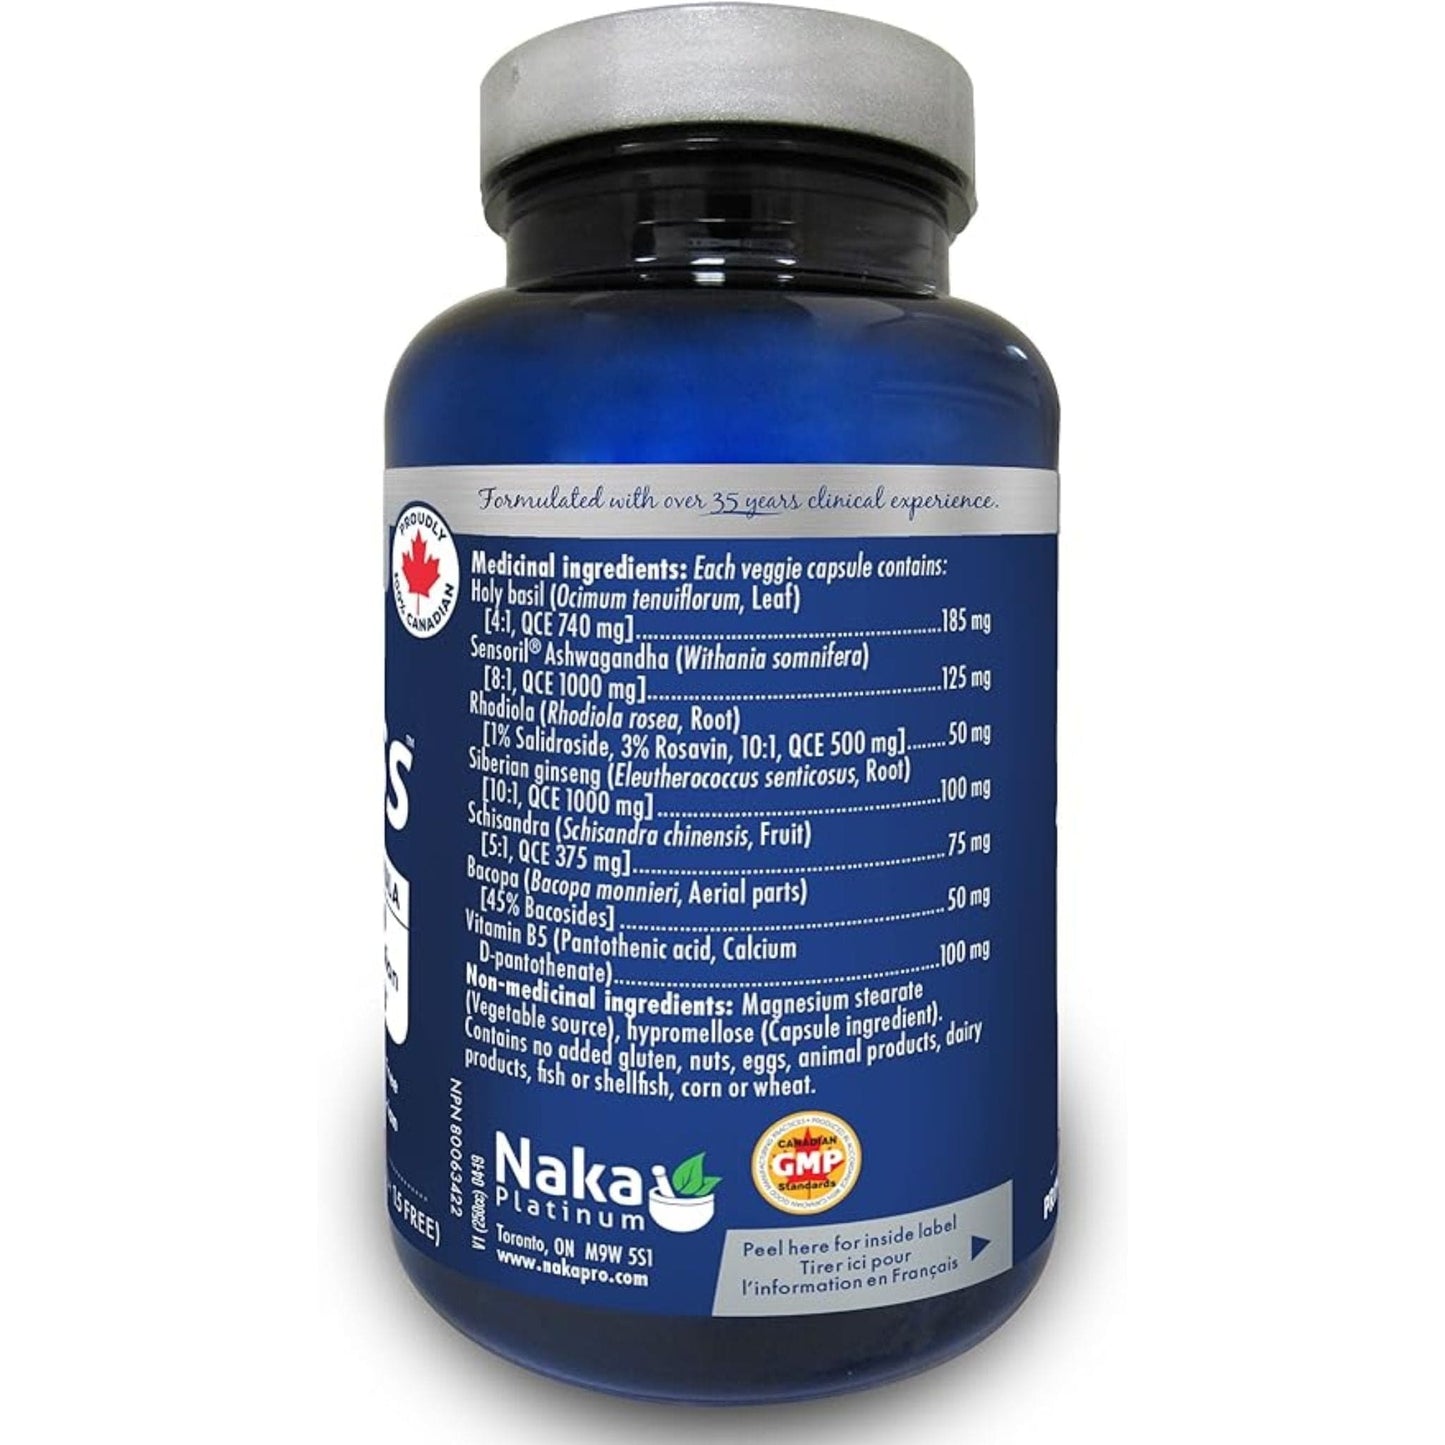 Naka Platinum Pro Stress, Adatogenic Formula, 75 Vegetable Capsules